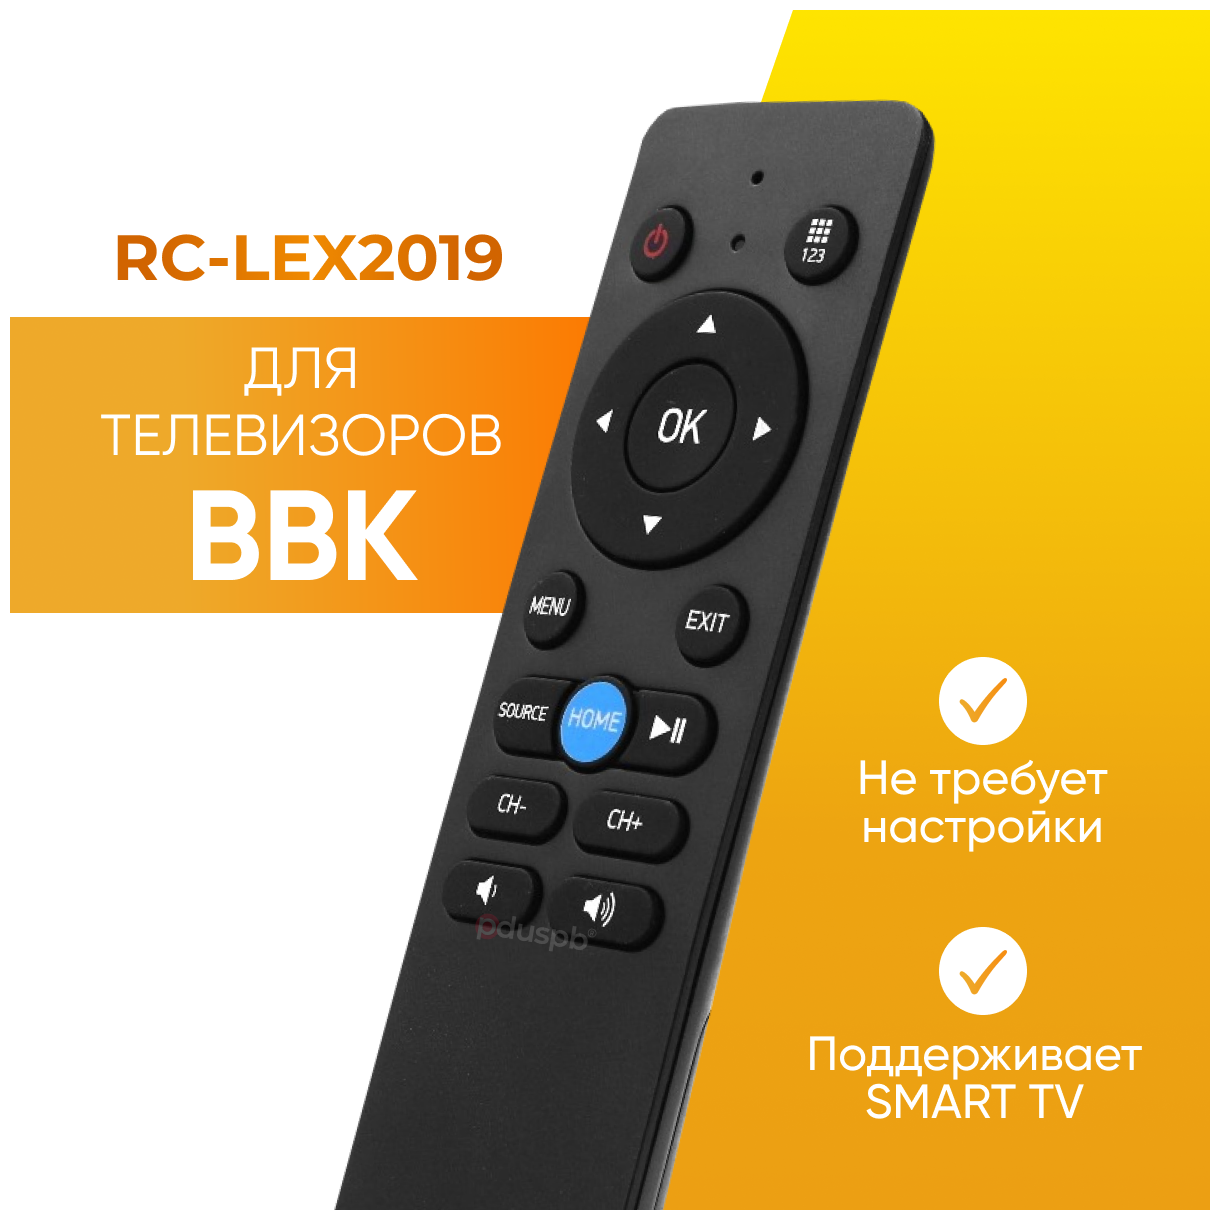 Пульт дистанционного управления (ду) для телевизора BBK RC-LEX2019 smart tv